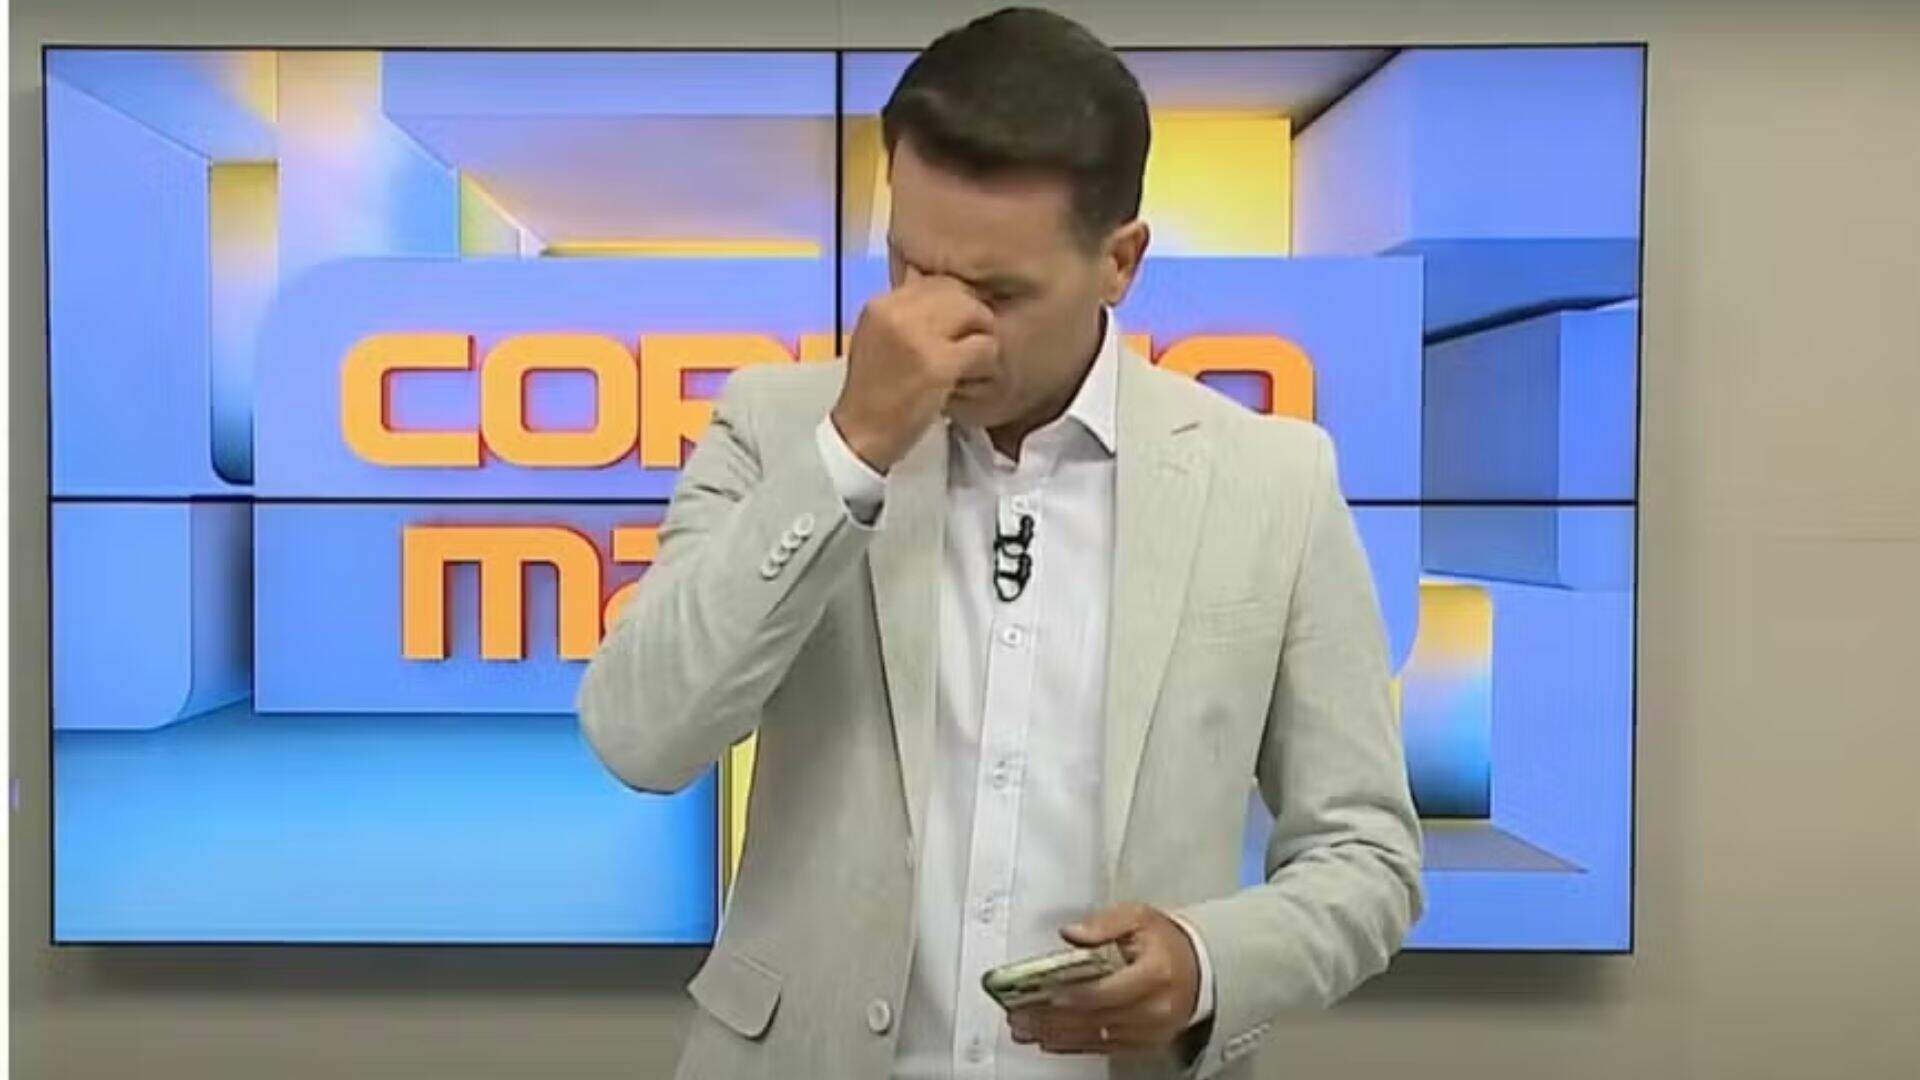 Após quase ser baleado em tentativa de assalto, apresentador chora ao vivo - Metropolitana FM